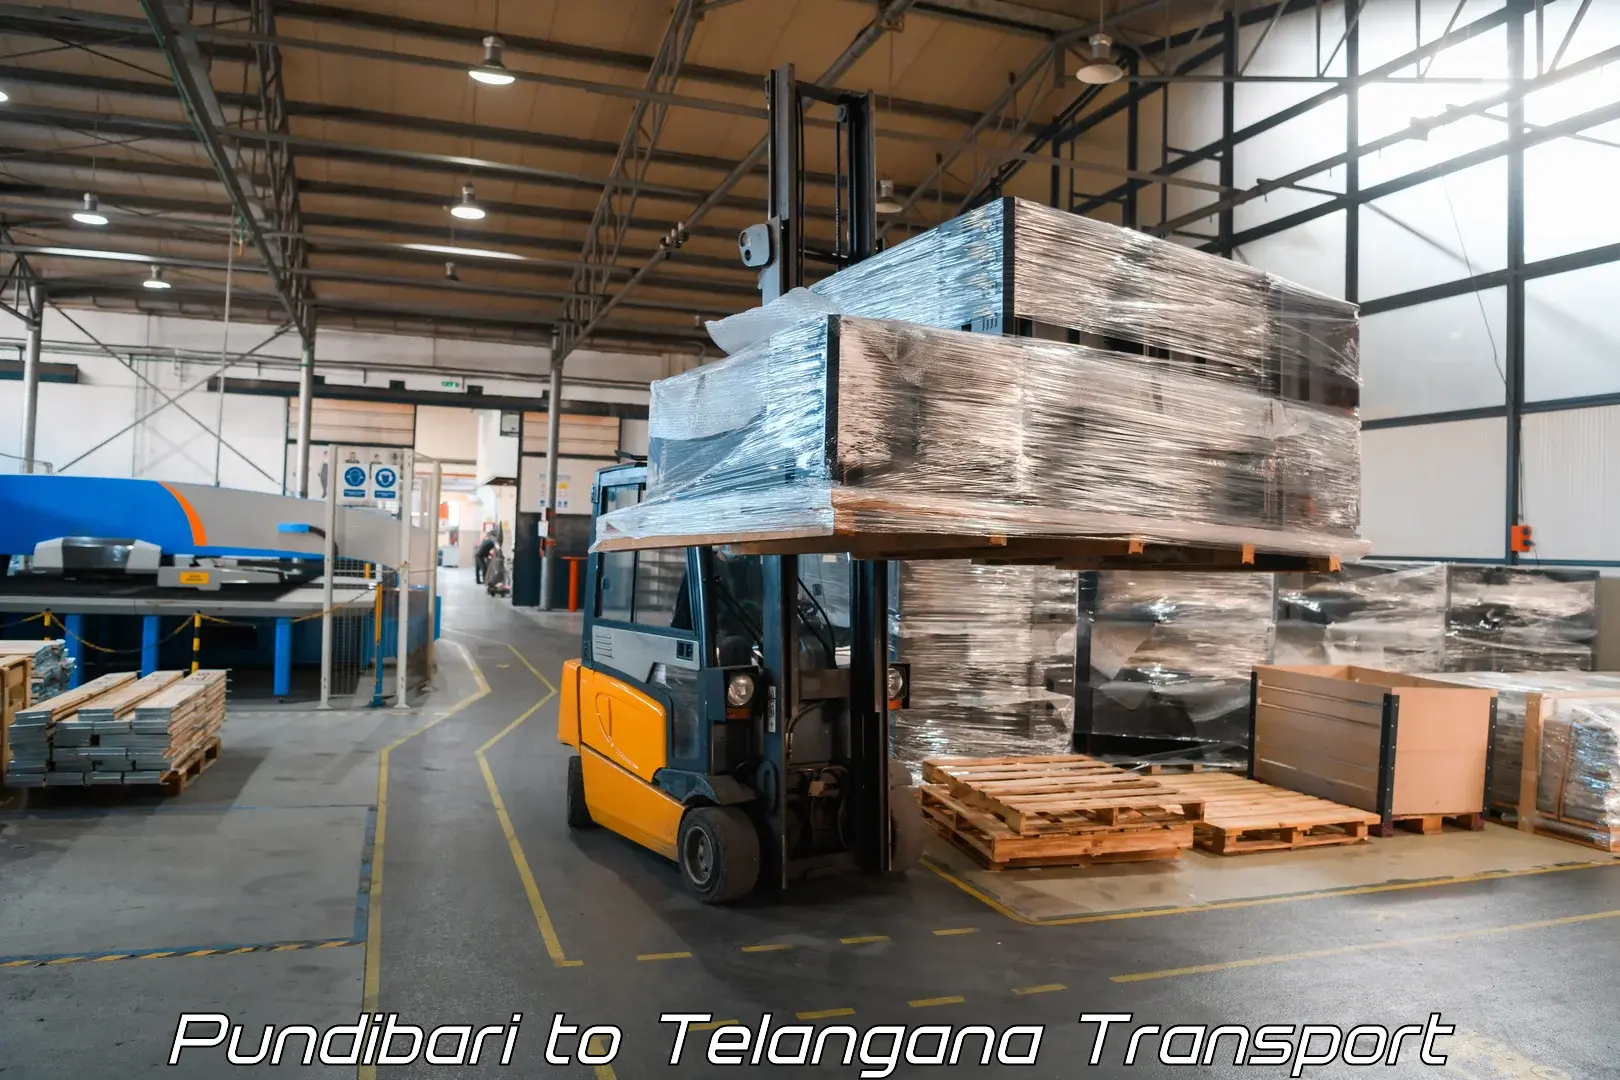 Cargo transport services Pundibari to Babasagar